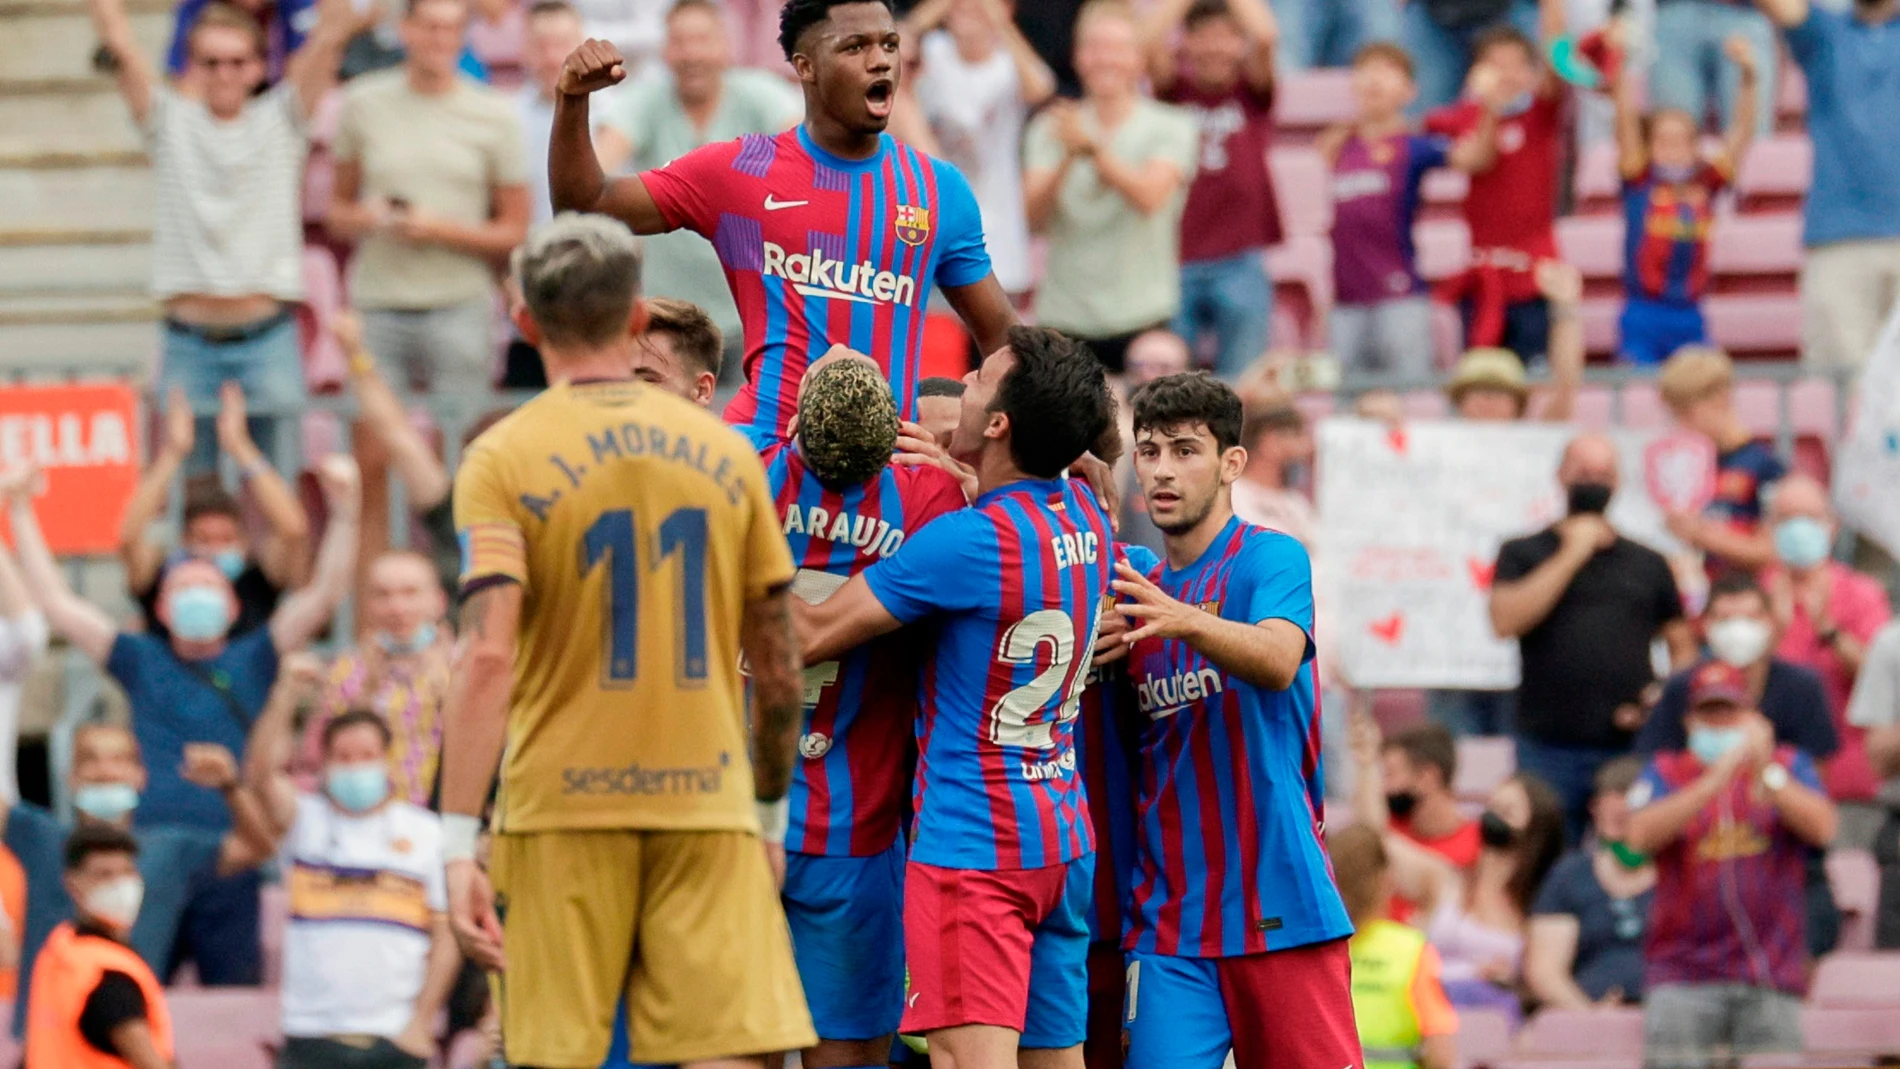 El Barça gana al Levante y el Camp Nou vuelve a sonreír tras la vuelta triunfal de Ansu Fati